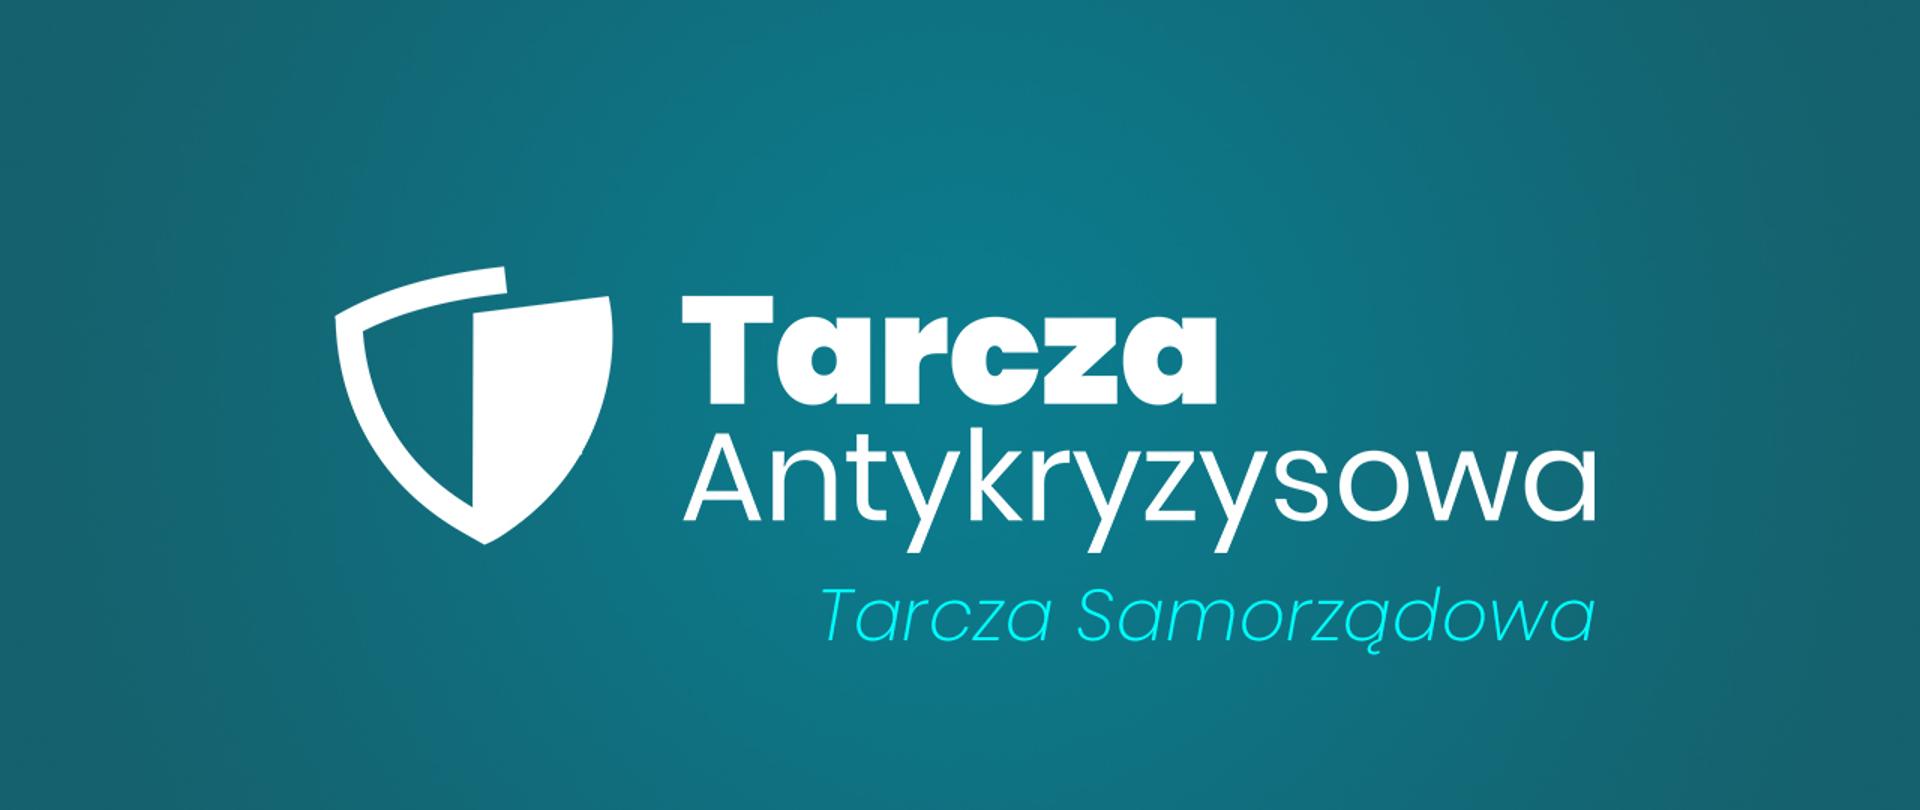 Logo Tarcza Antykryzysowa z dopiskiem Tarcza Samorządowa